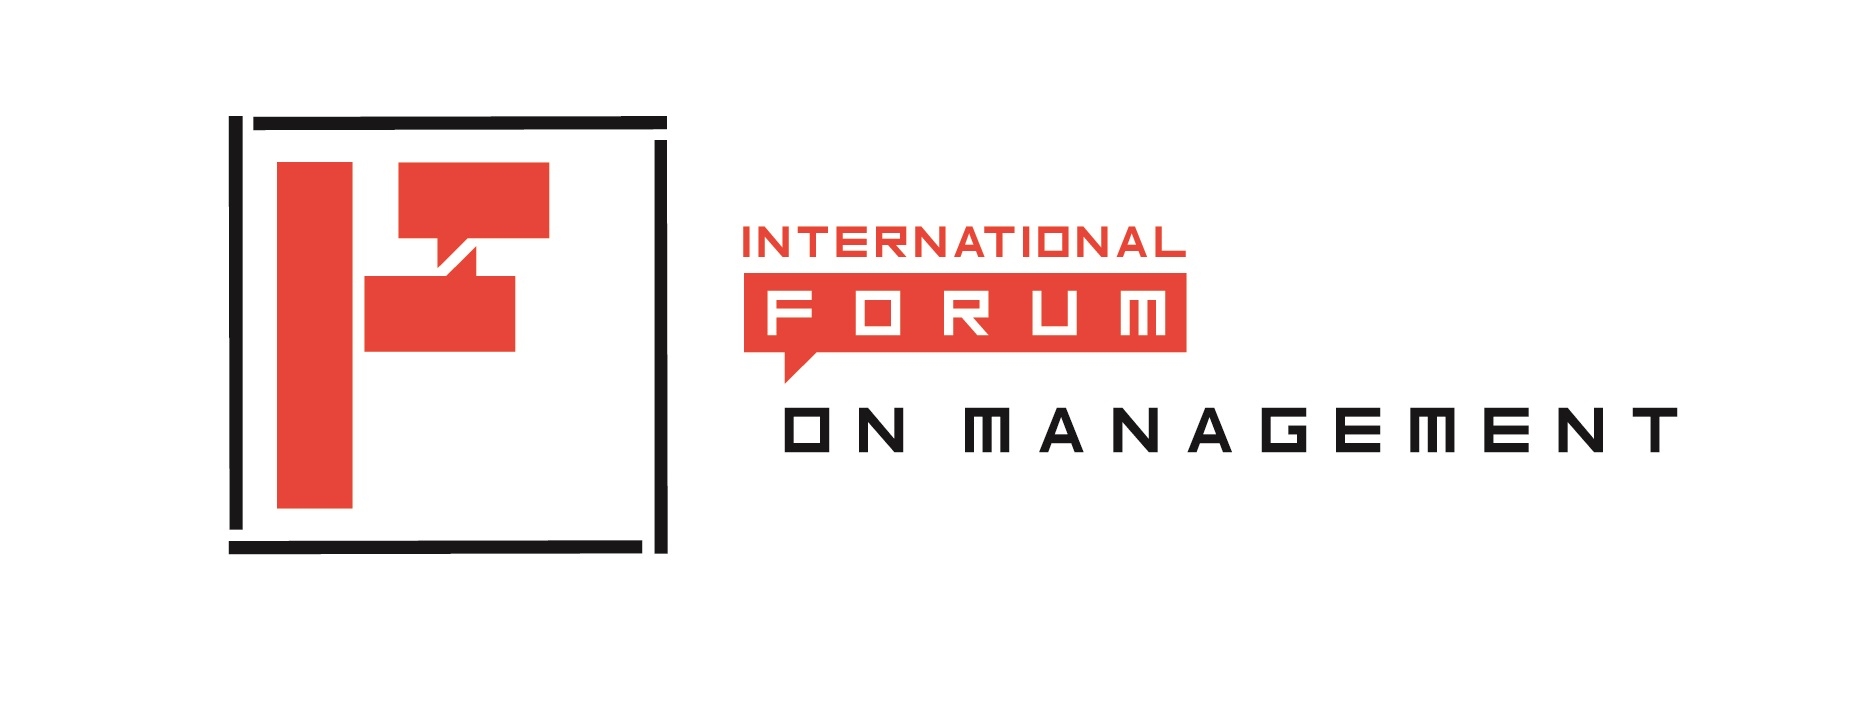 ifm-logo-01-10-2018